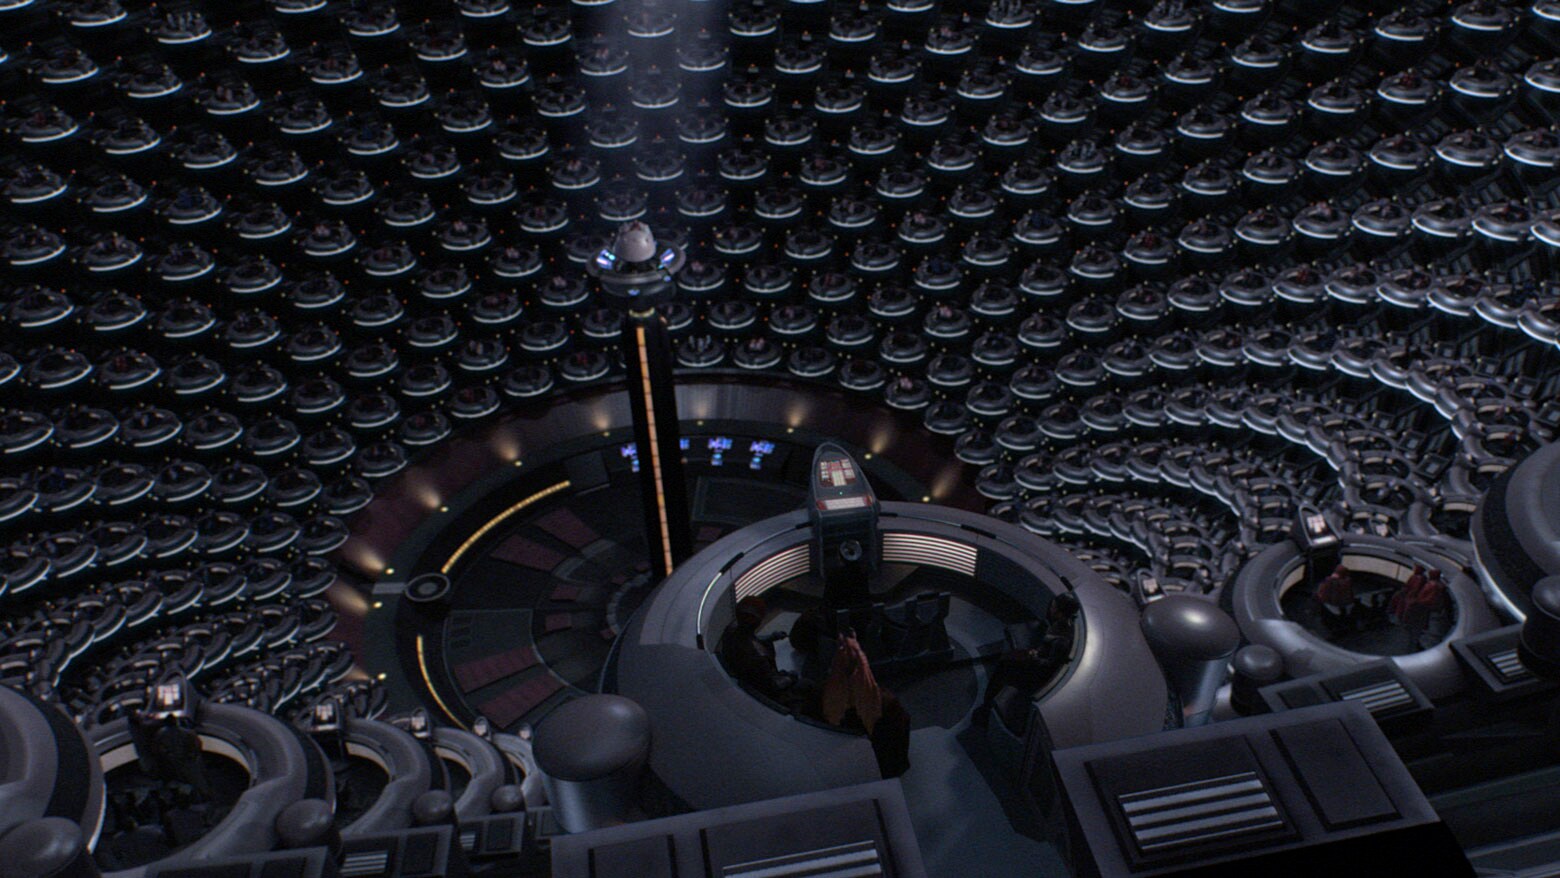 Galactic Senate